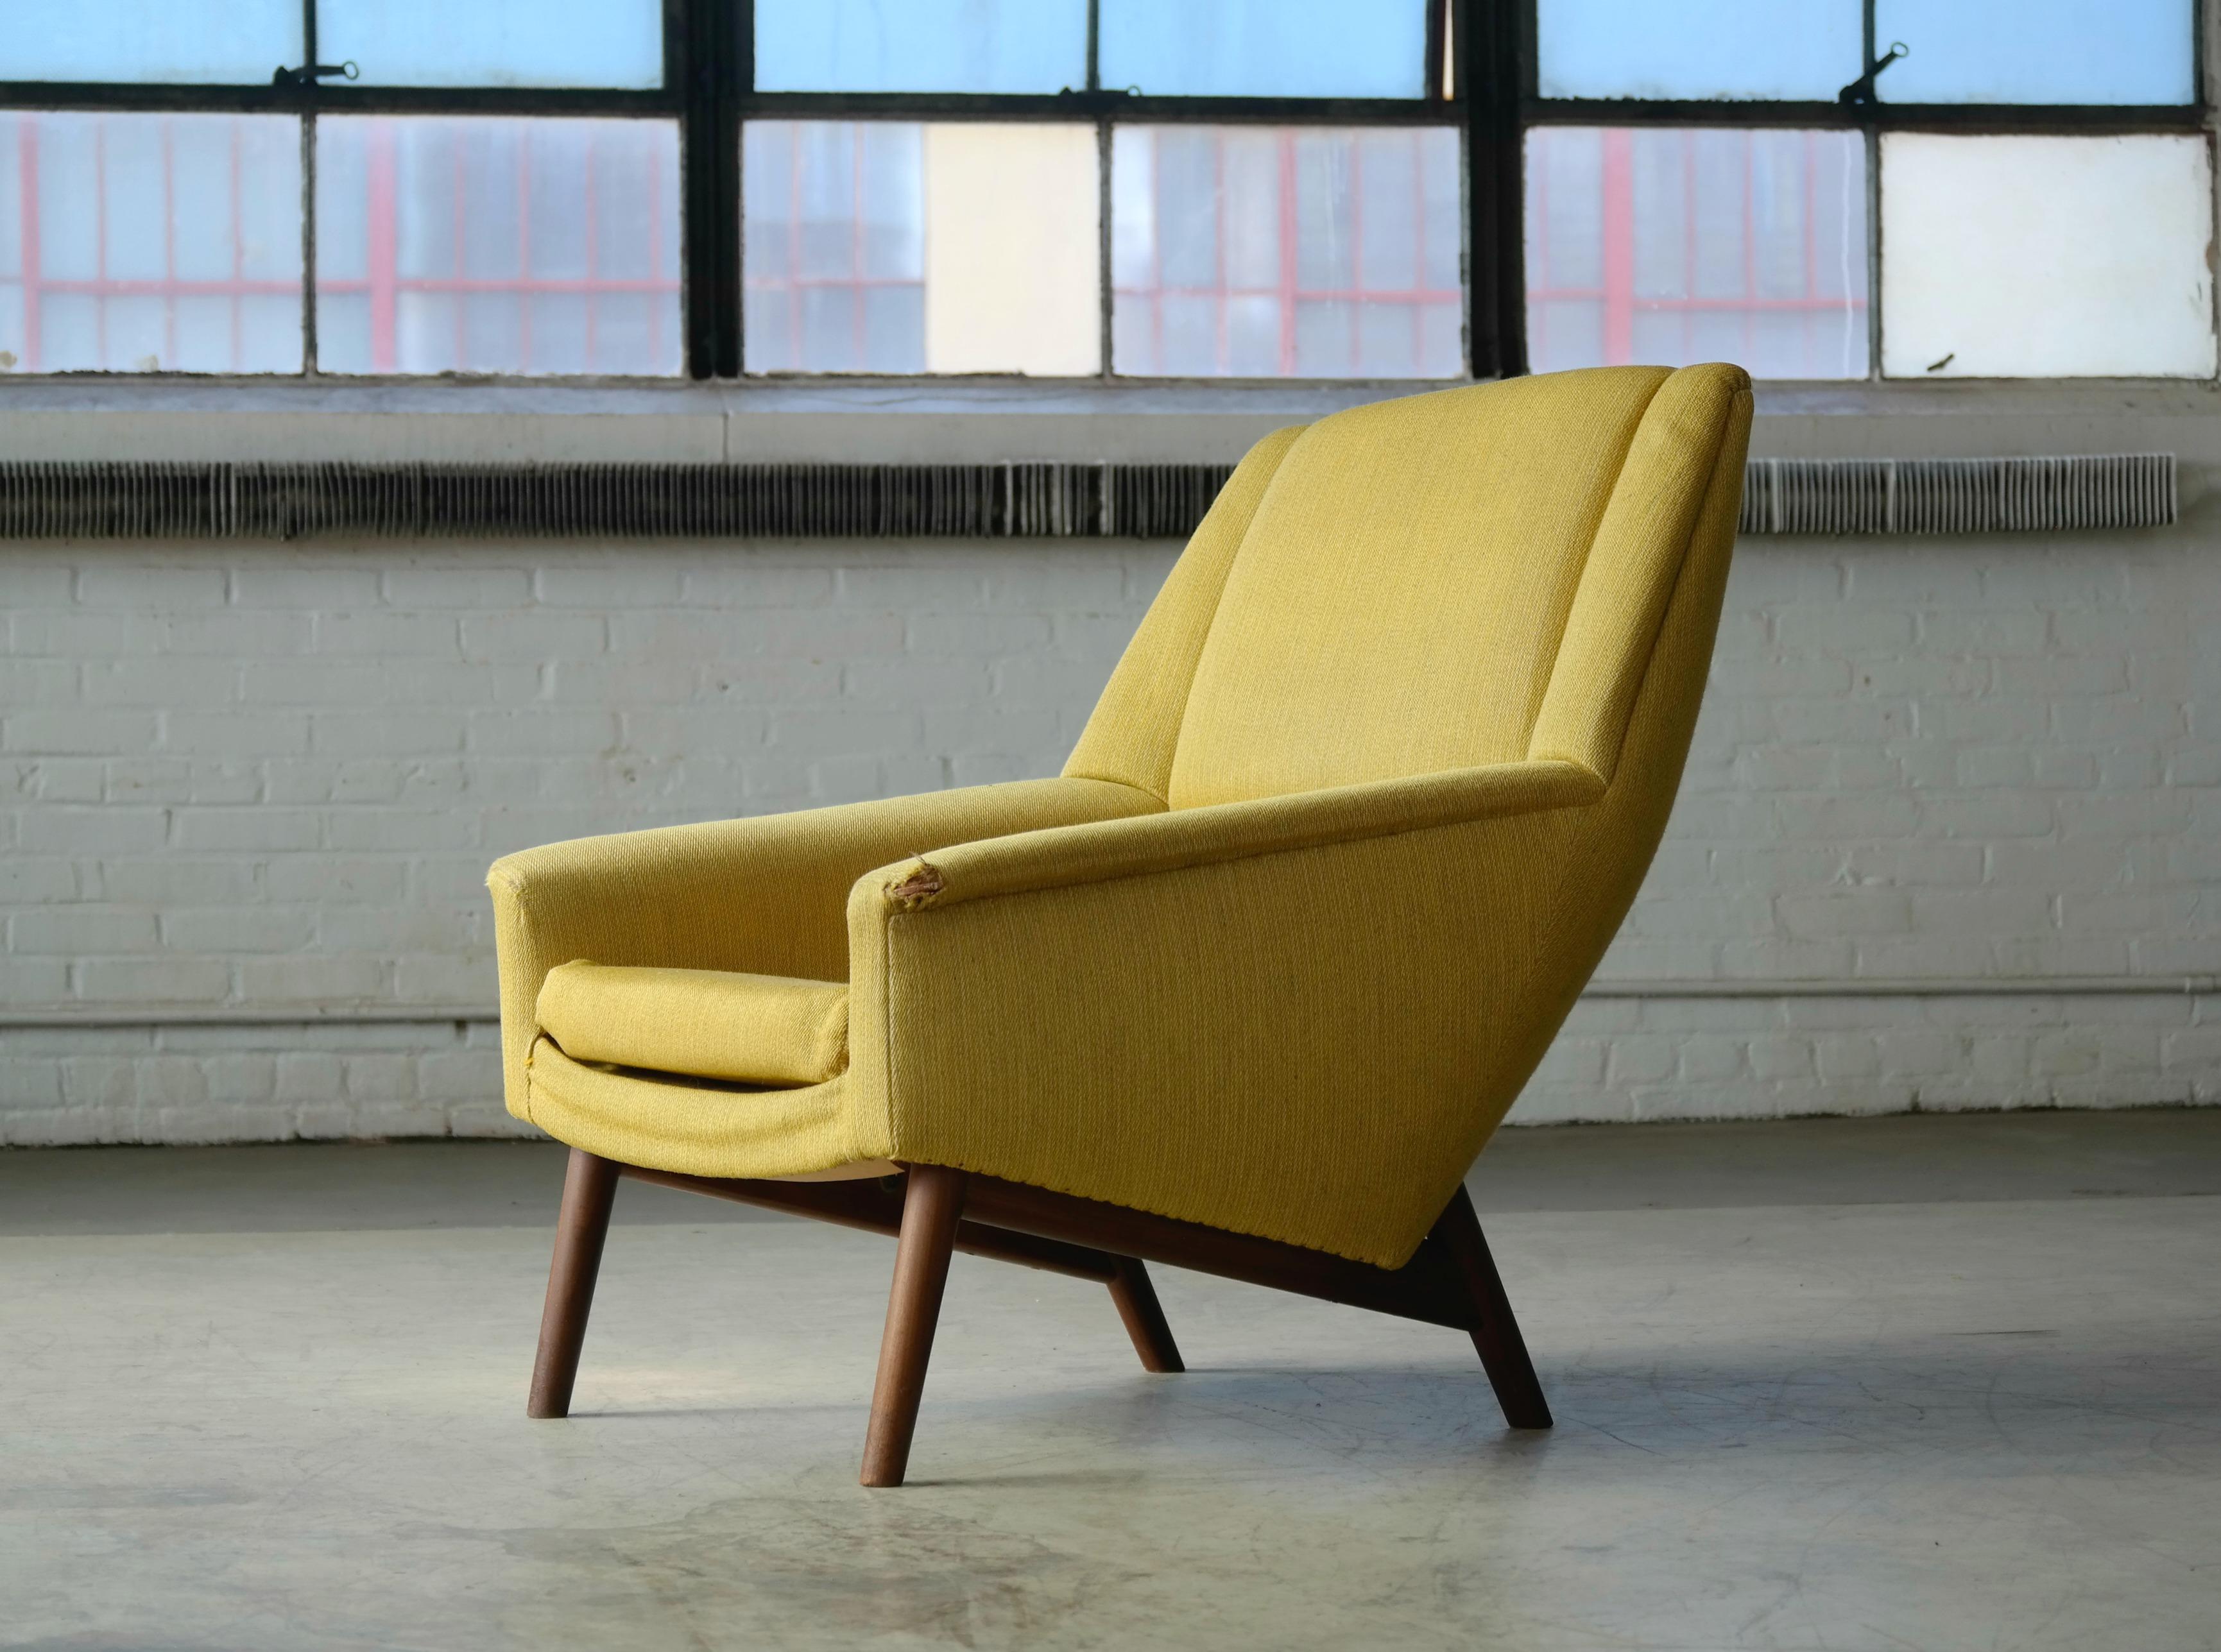 Wool Folke Ohlsson 1950s Teak Lounge Chair for Fritz Hansen Danish Midcentury